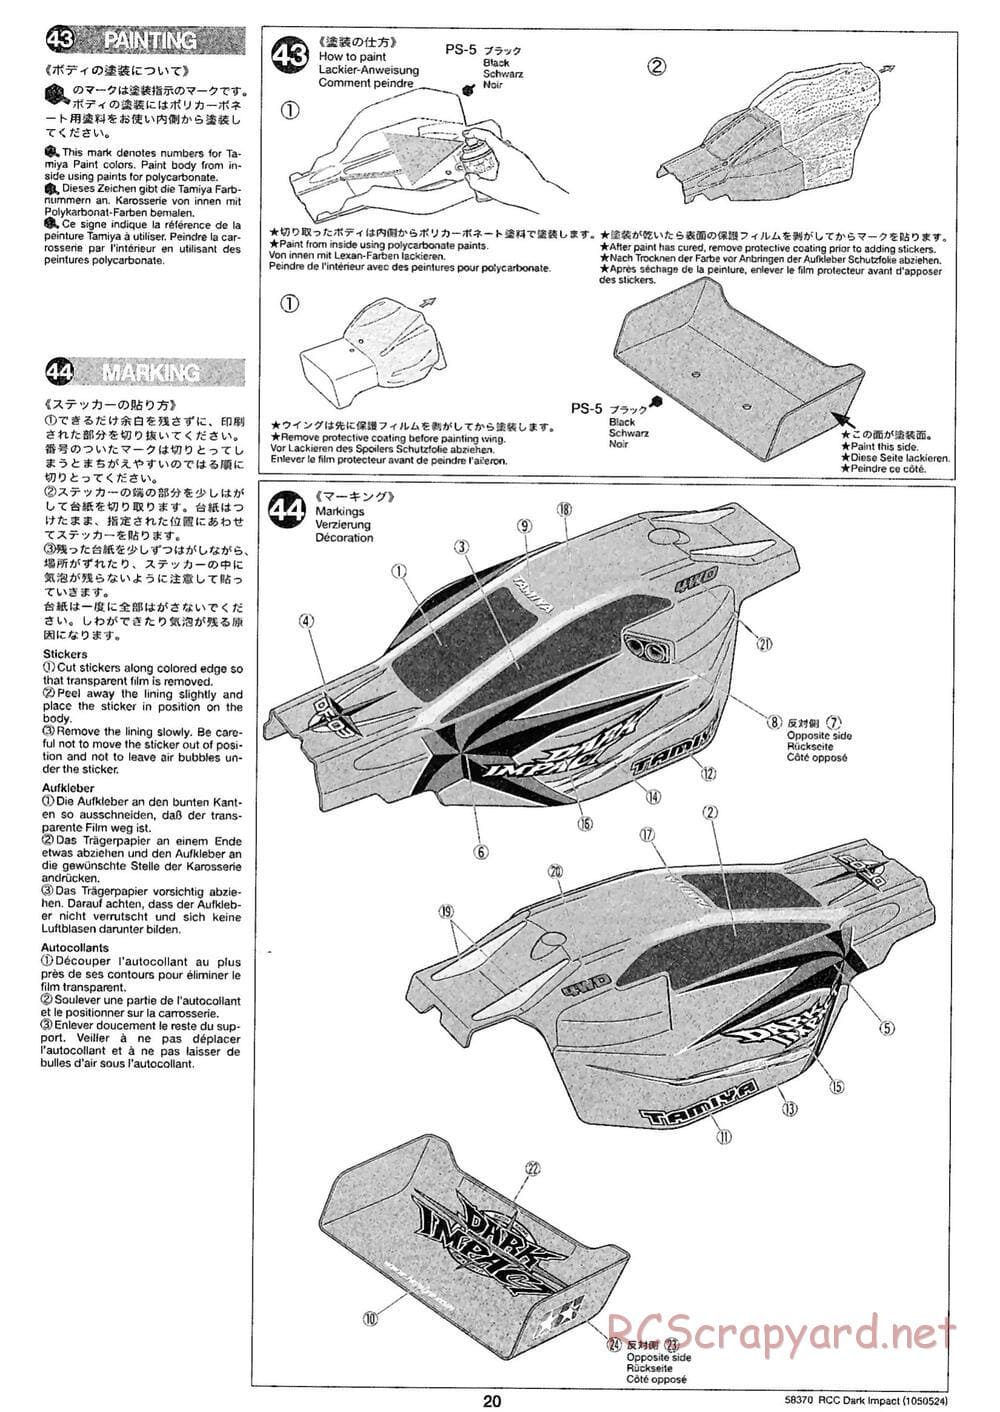 Tamiya - Dark Impact Chassis - Manual - Page 20